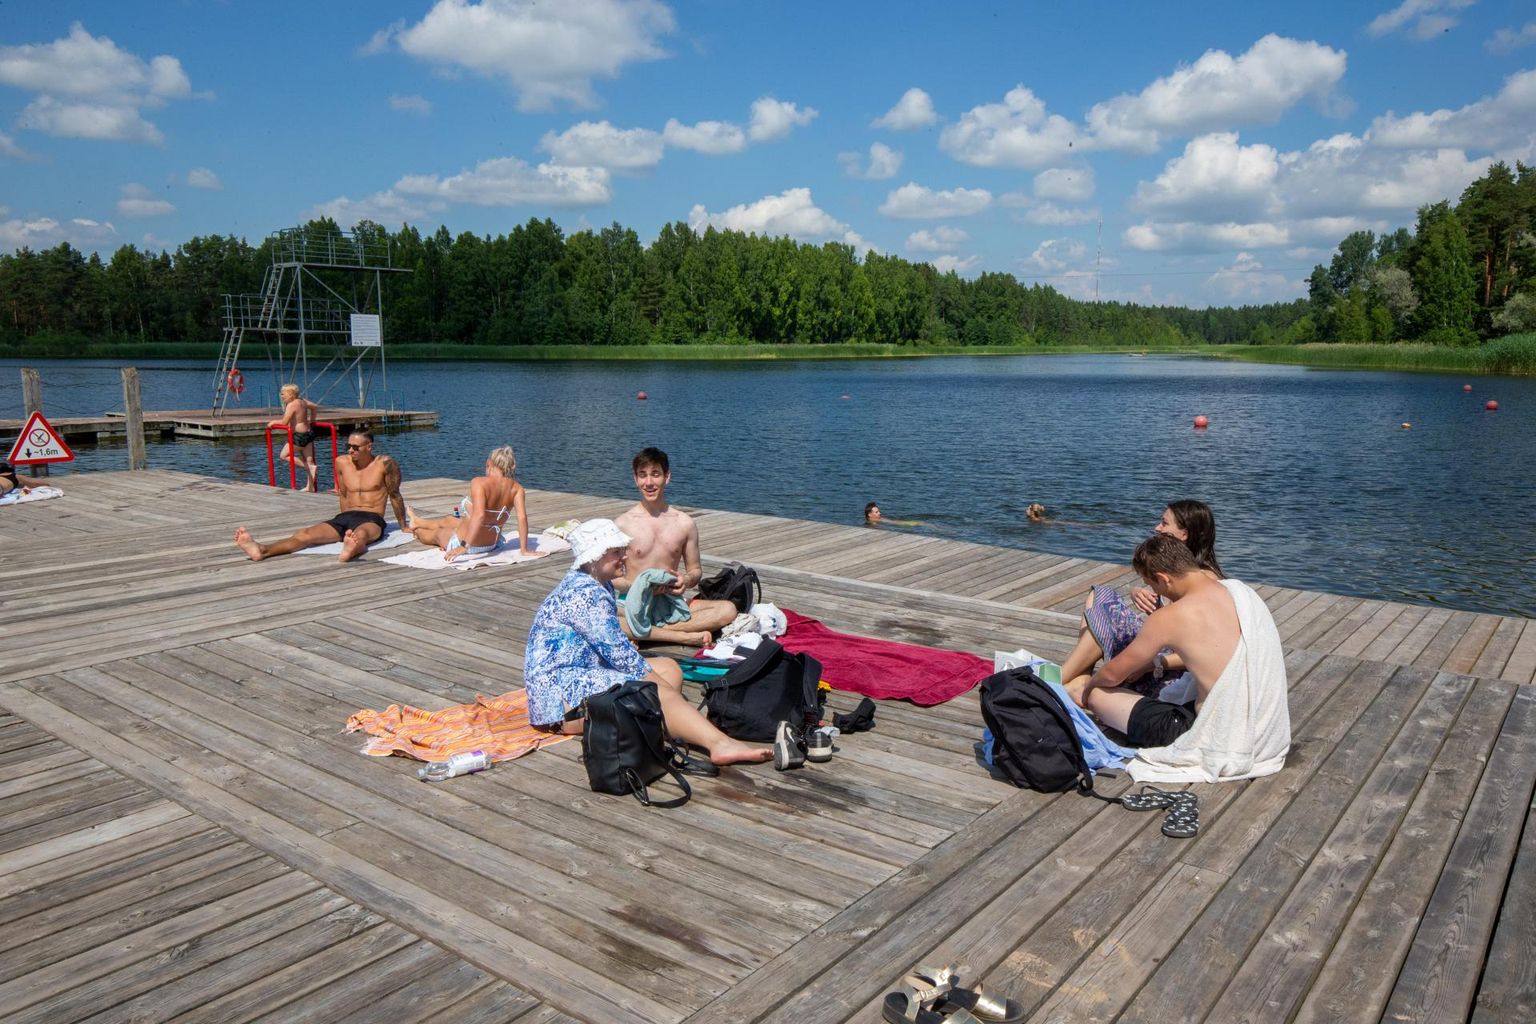 В четверг днем ​​желтый флаг не остановил молодых людей, купающихся на пляже озера Вереви, потому что, по словам Лизетте Арви (на фото справа с темными волосами), они понятия не имели, что это значит.